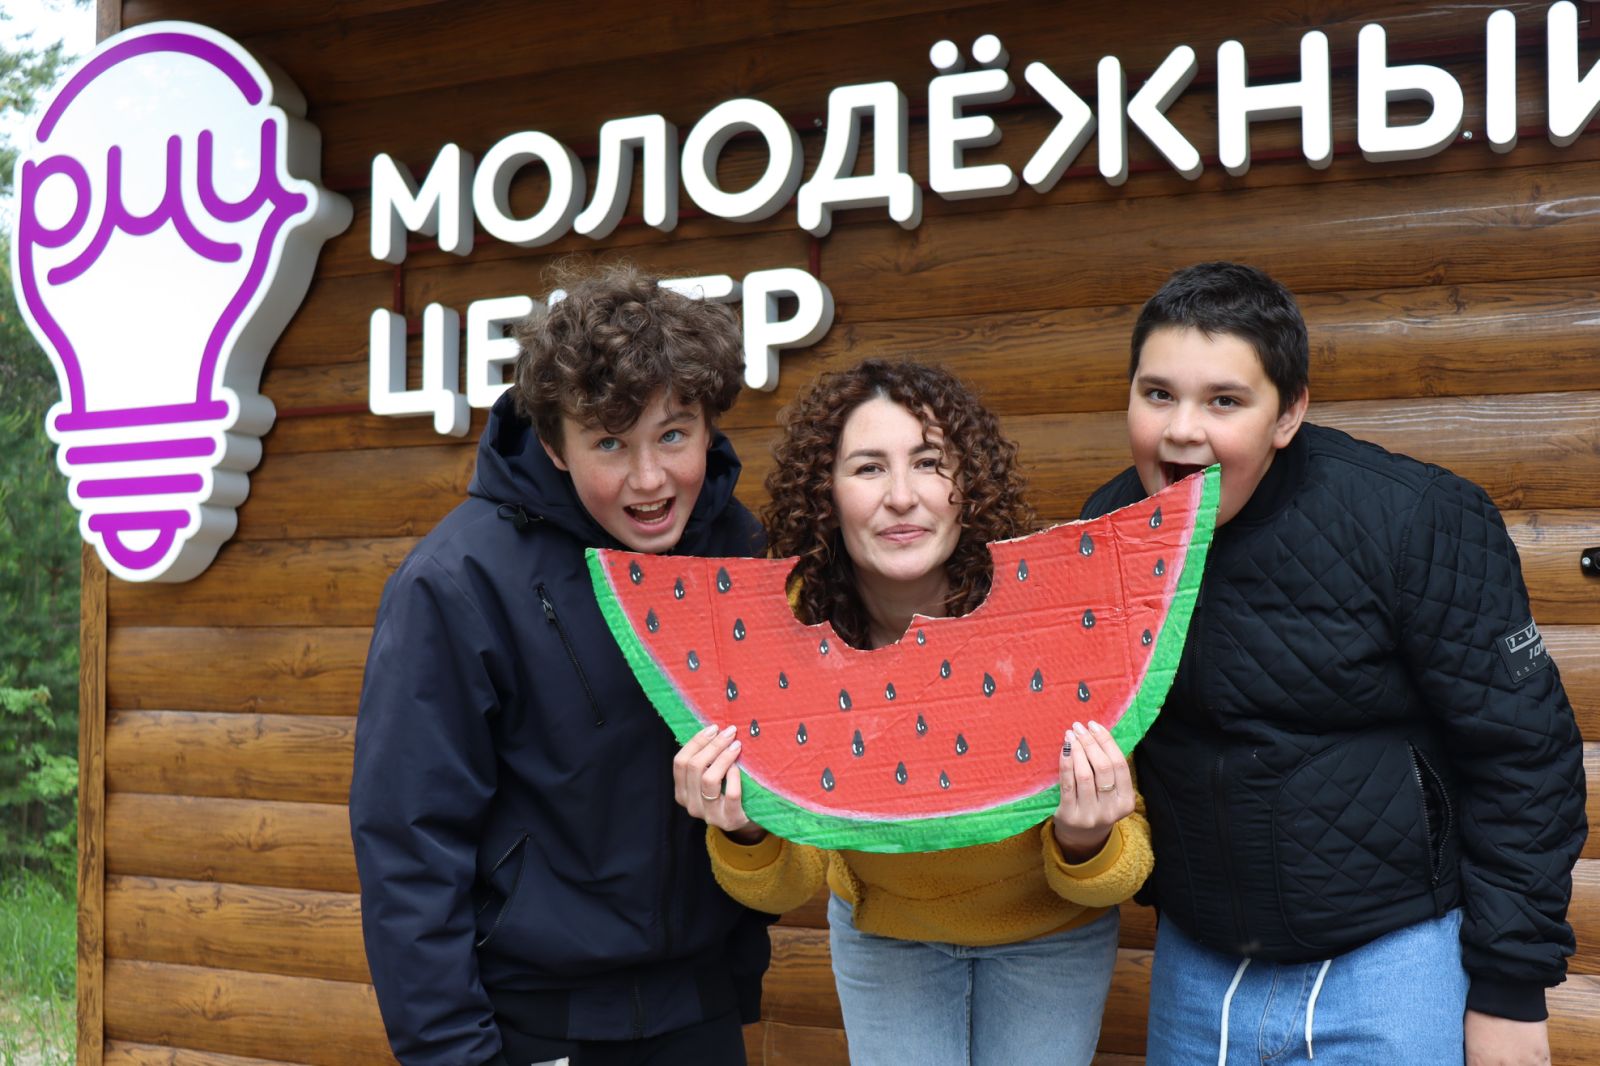 Стильно и модно: в Сургутском районе отметили День молодежи